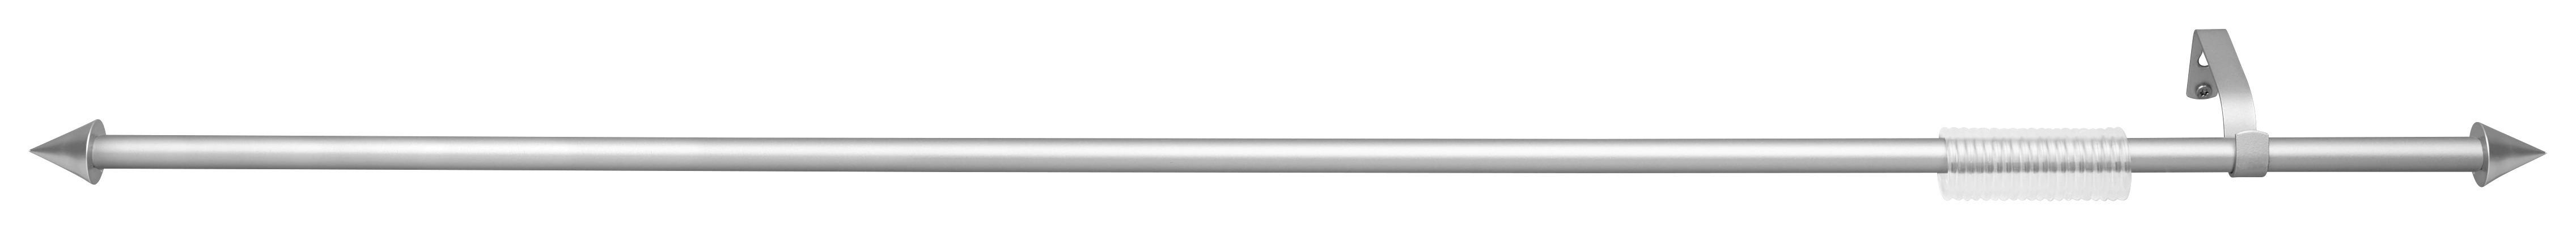 Rundstangengarnitur Birgit Silberfarben L: 130-240 cm - Silberfarben, KONVENTIONELL, Metall (130-240cm) - Ondega